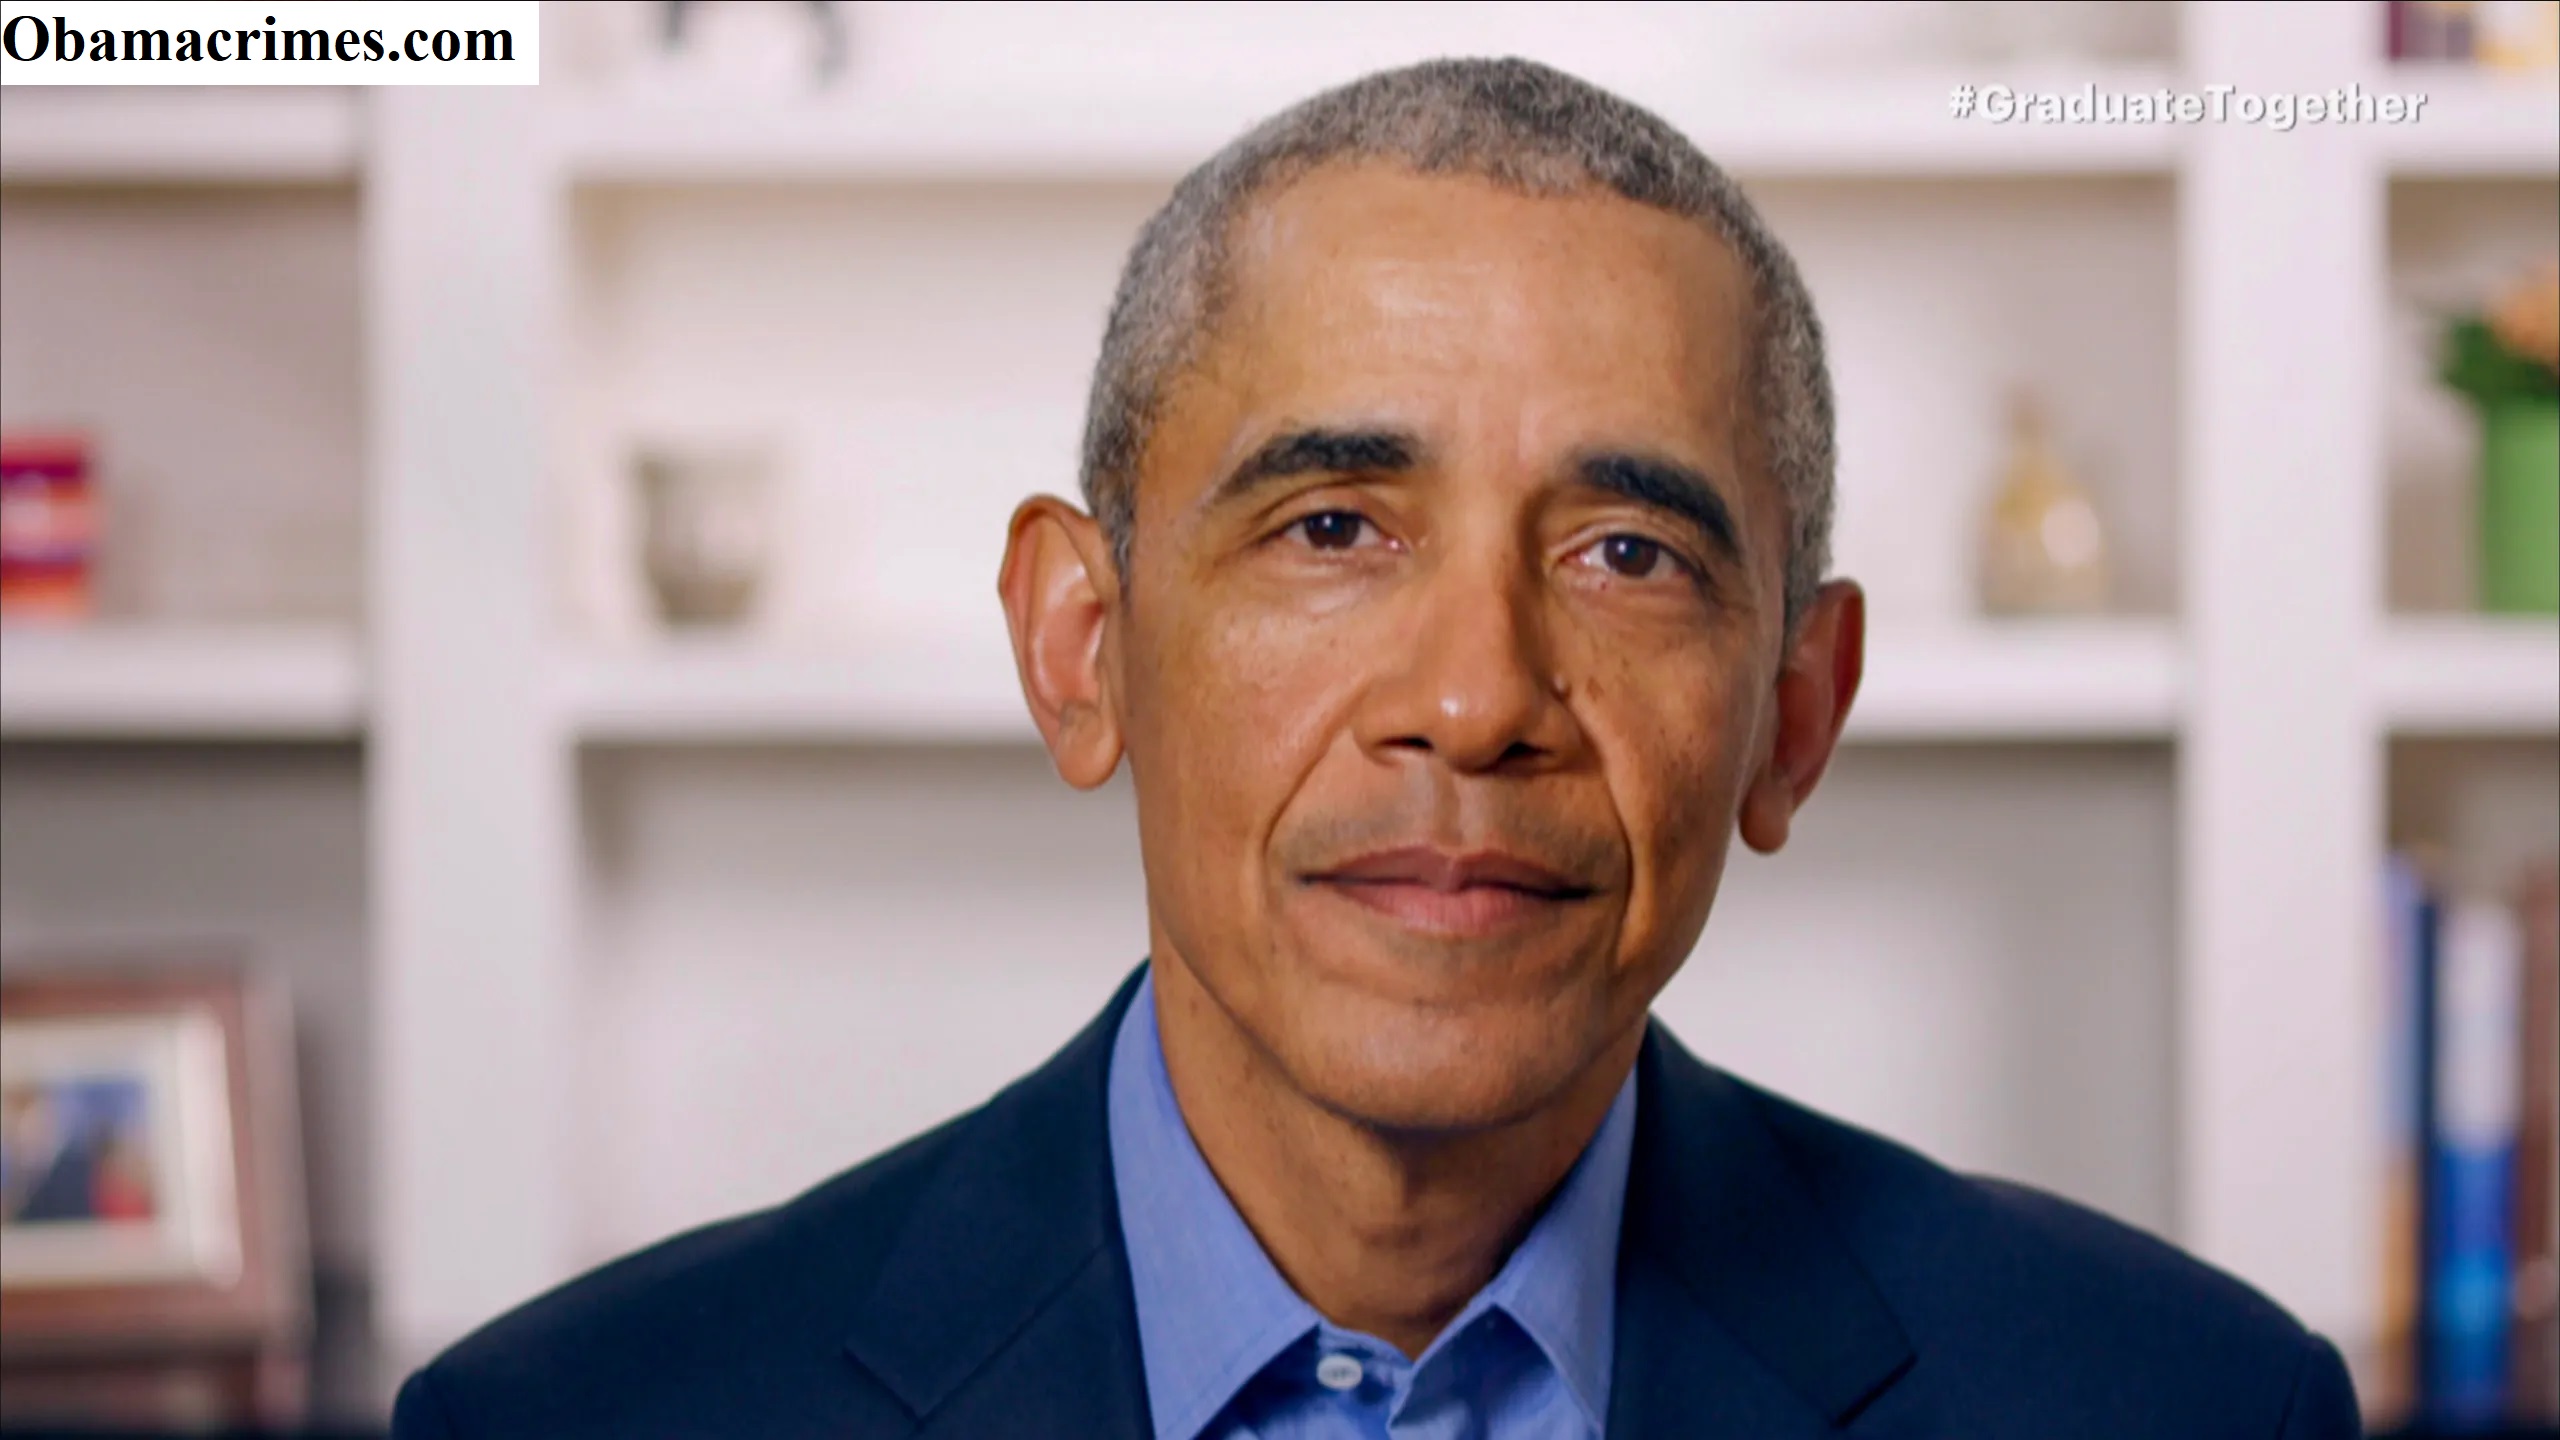 Obama Berikan Pernyataan Ke Media Tentang Informasi Yang Salah